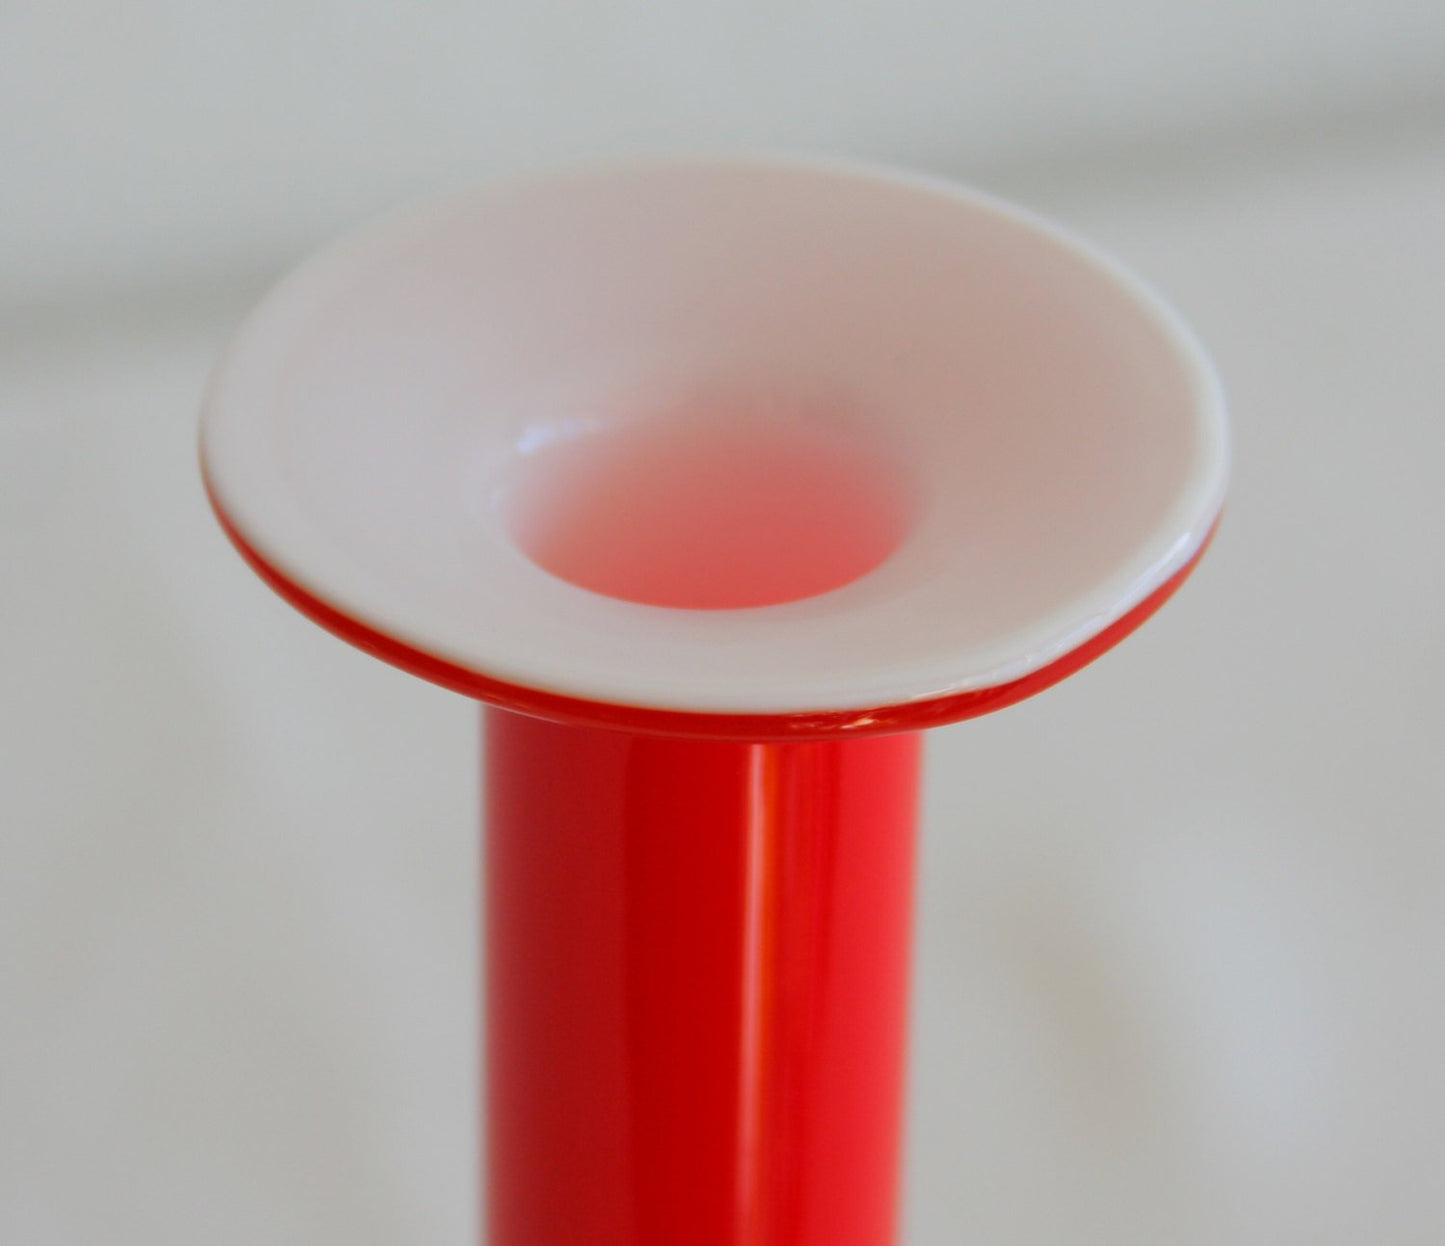 PER LÜTKEN Kastrup Holmegaard CARNABY Red Cased Hoped Glass Vase Mollaris.com 